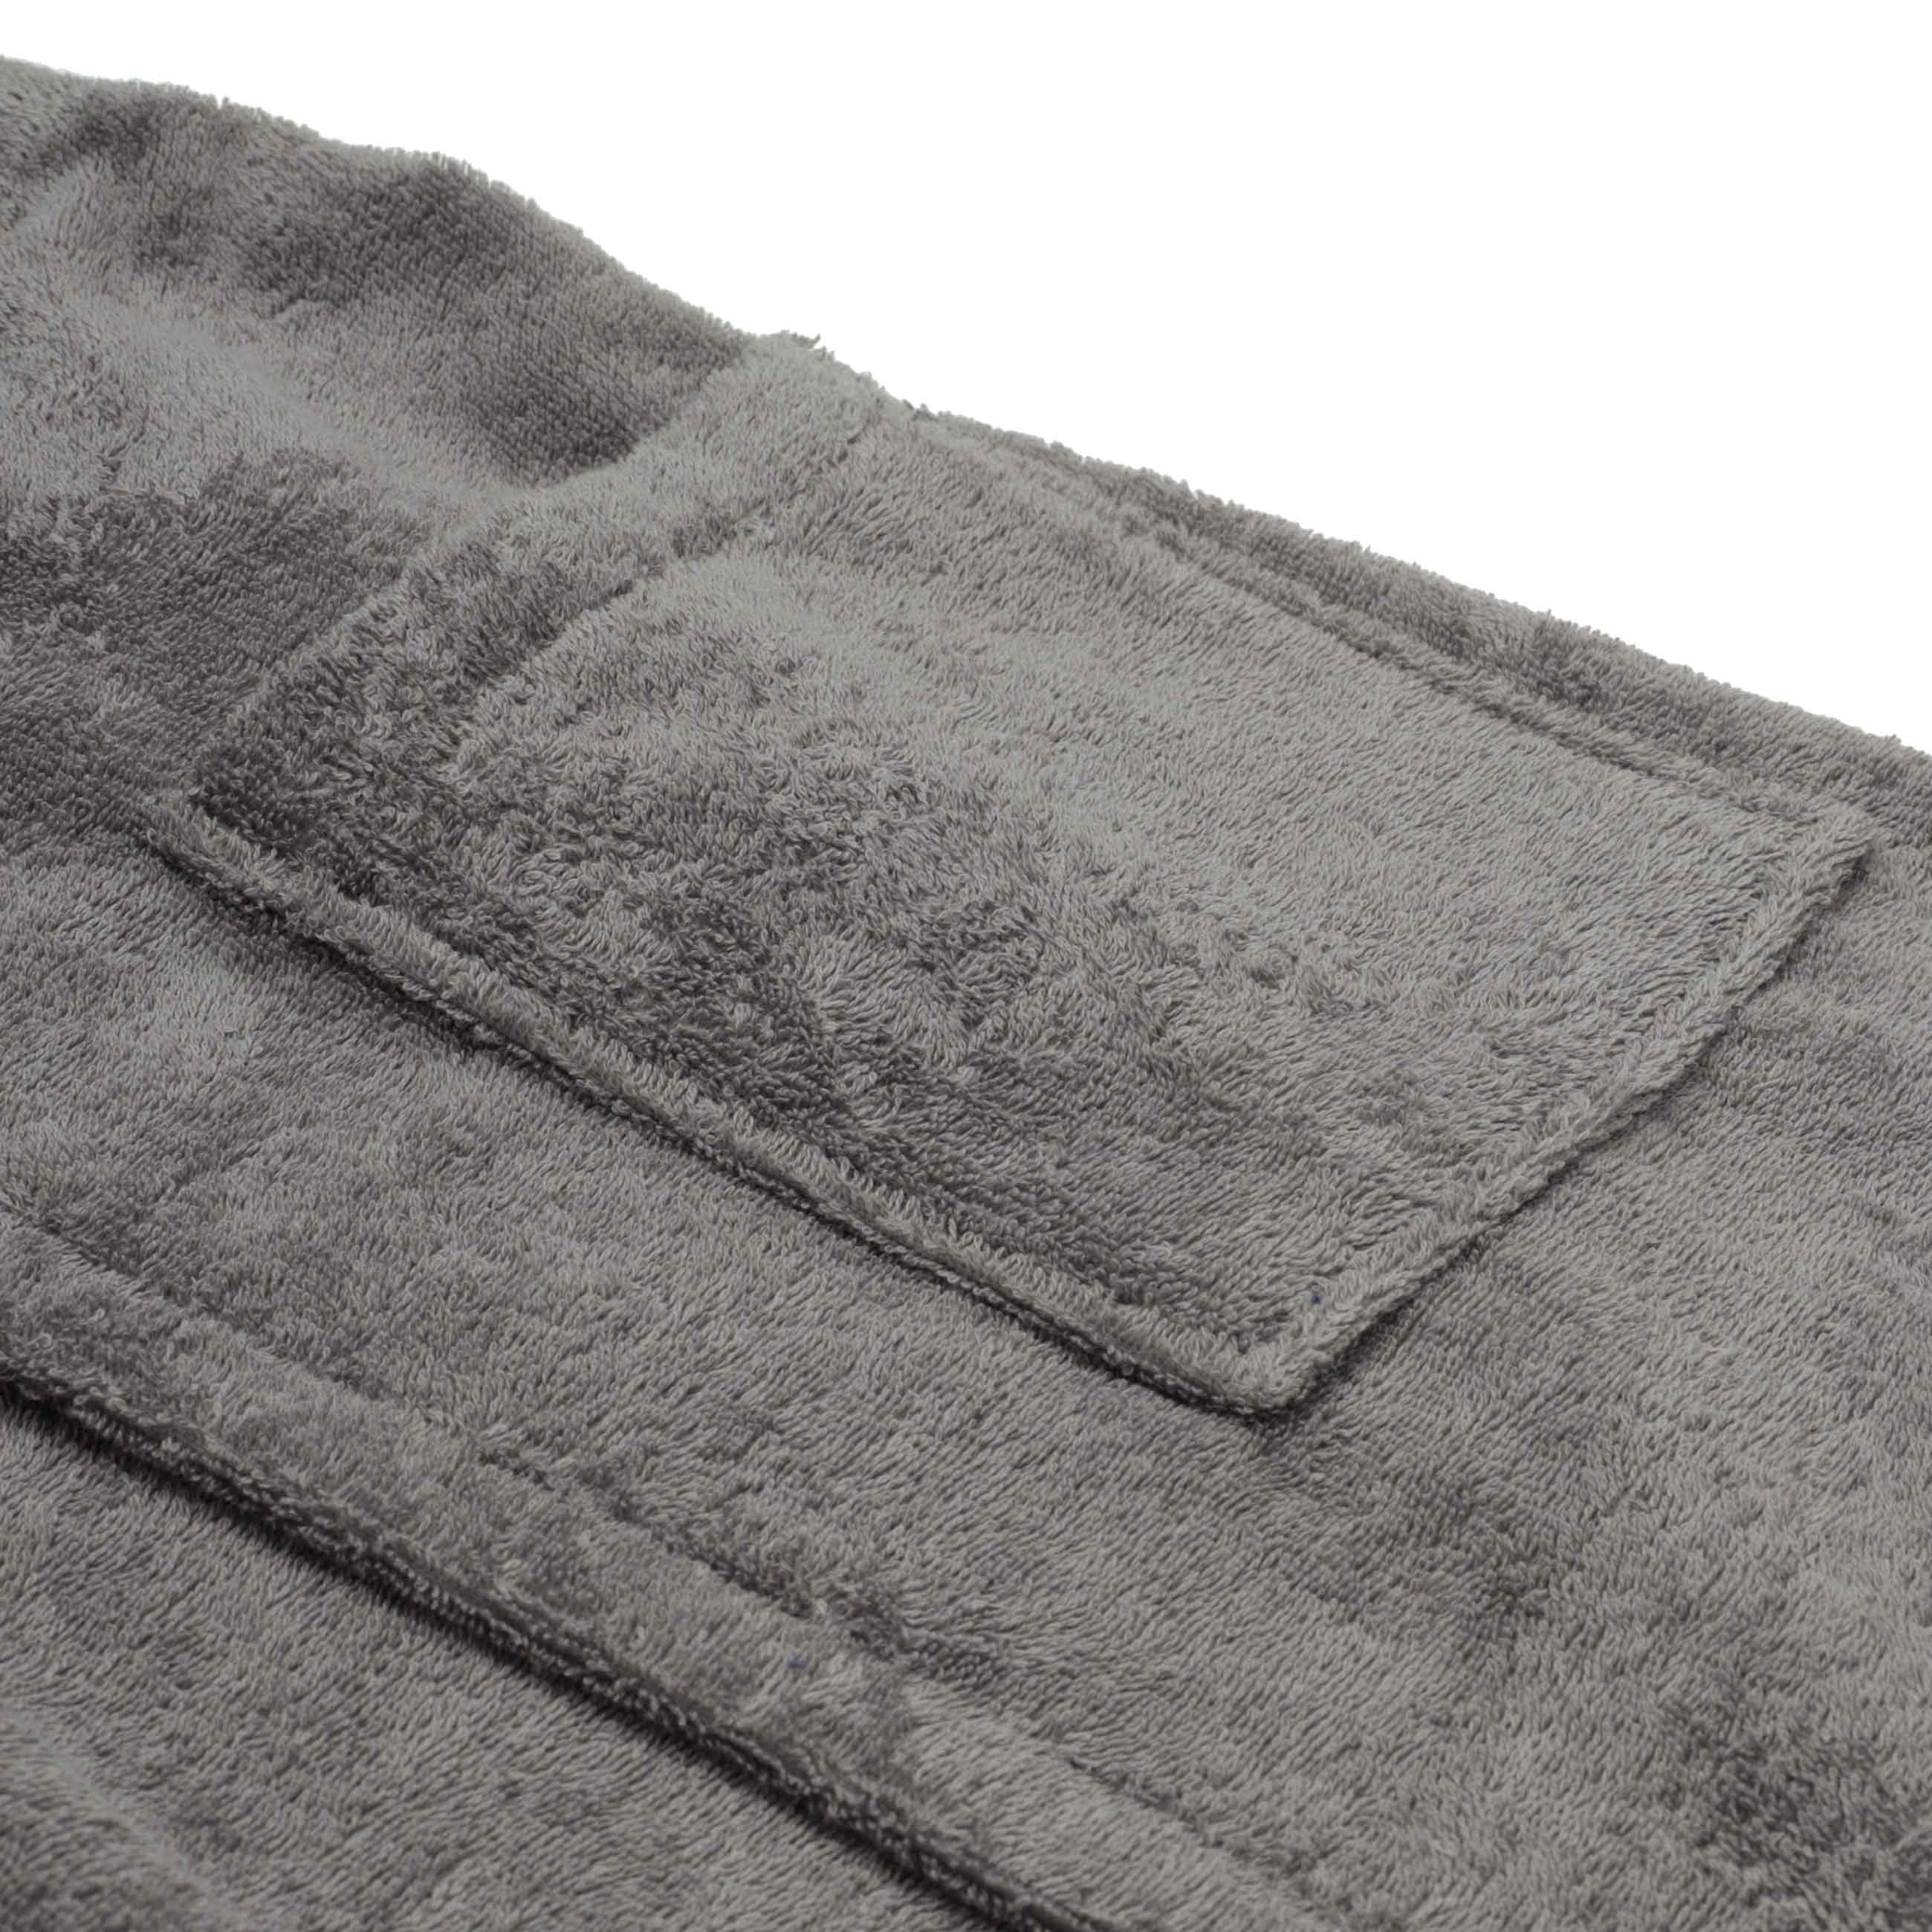 Полотенце-килт мужское, 70х160 см, на липучке, хлопок, темно-серое, Spa towel изображение № 4